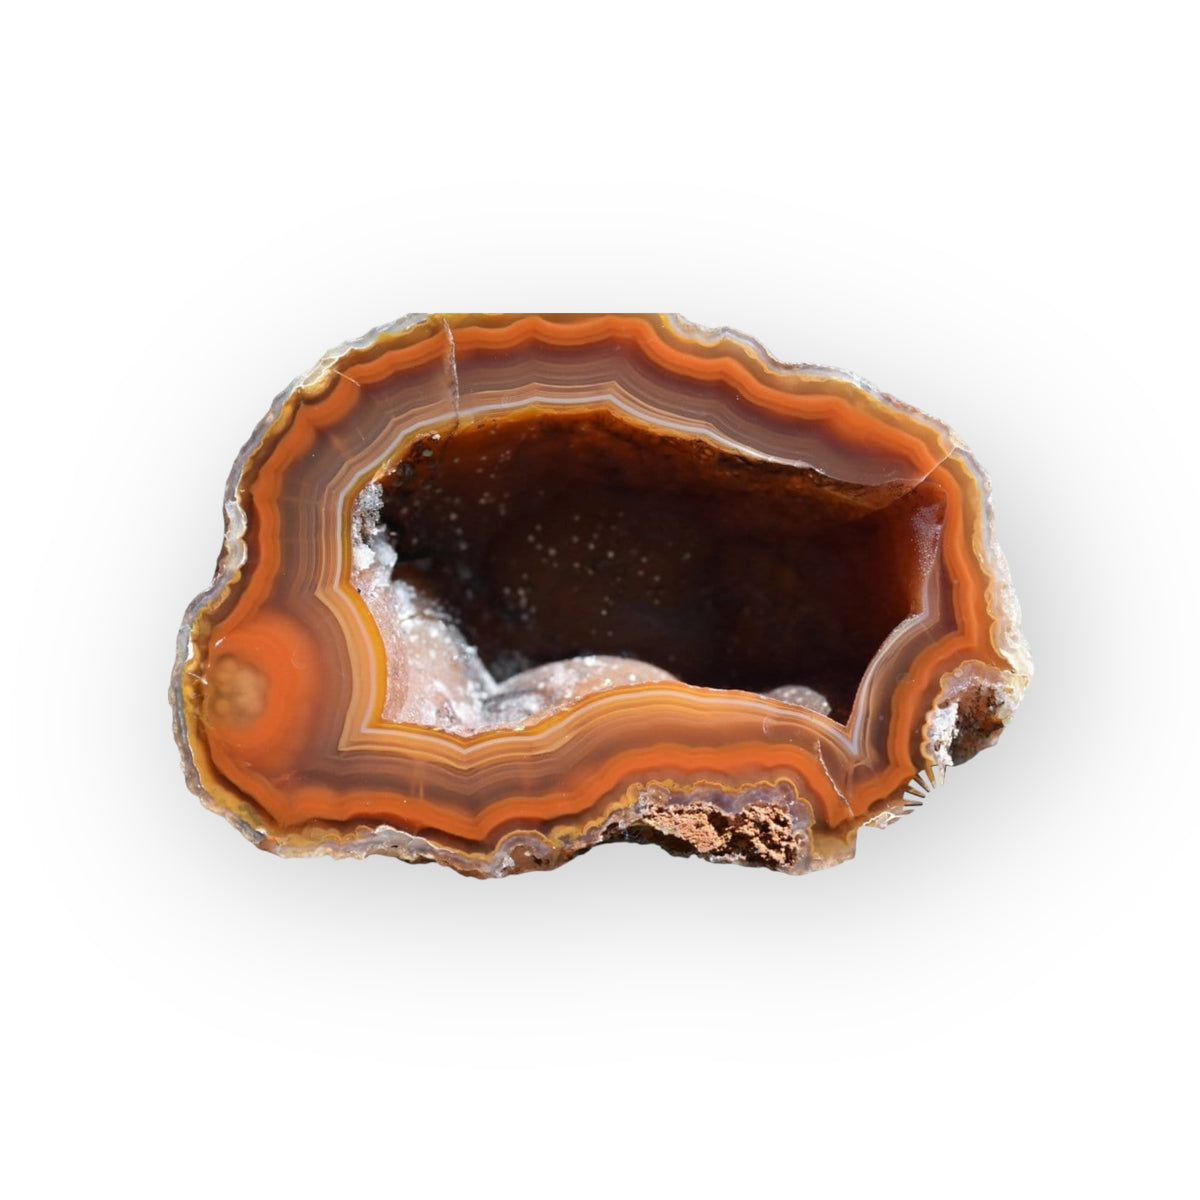 Coyamito Agate 01-FB01-7B - Del Rey Agates Gems & Minerals Inc.